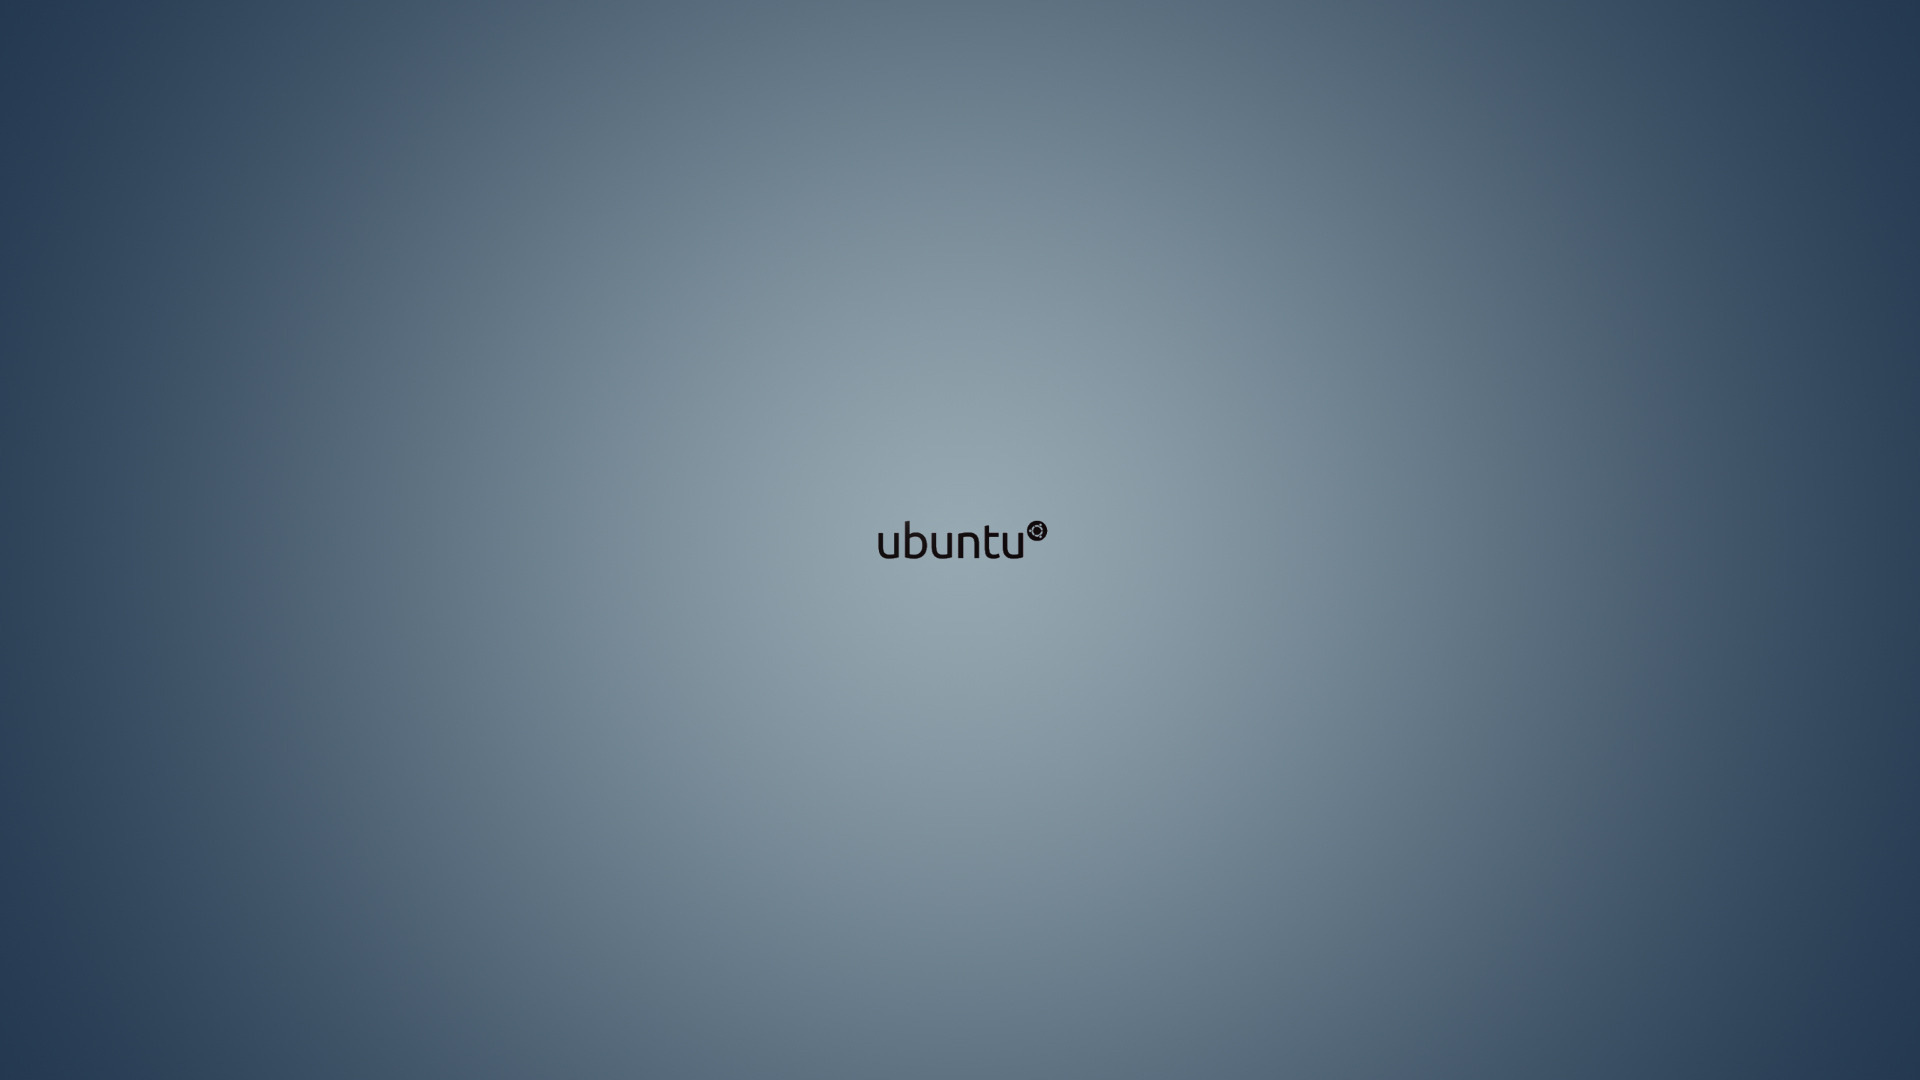 Ubuntu Wallpapers 14 - [1920 x 1080]